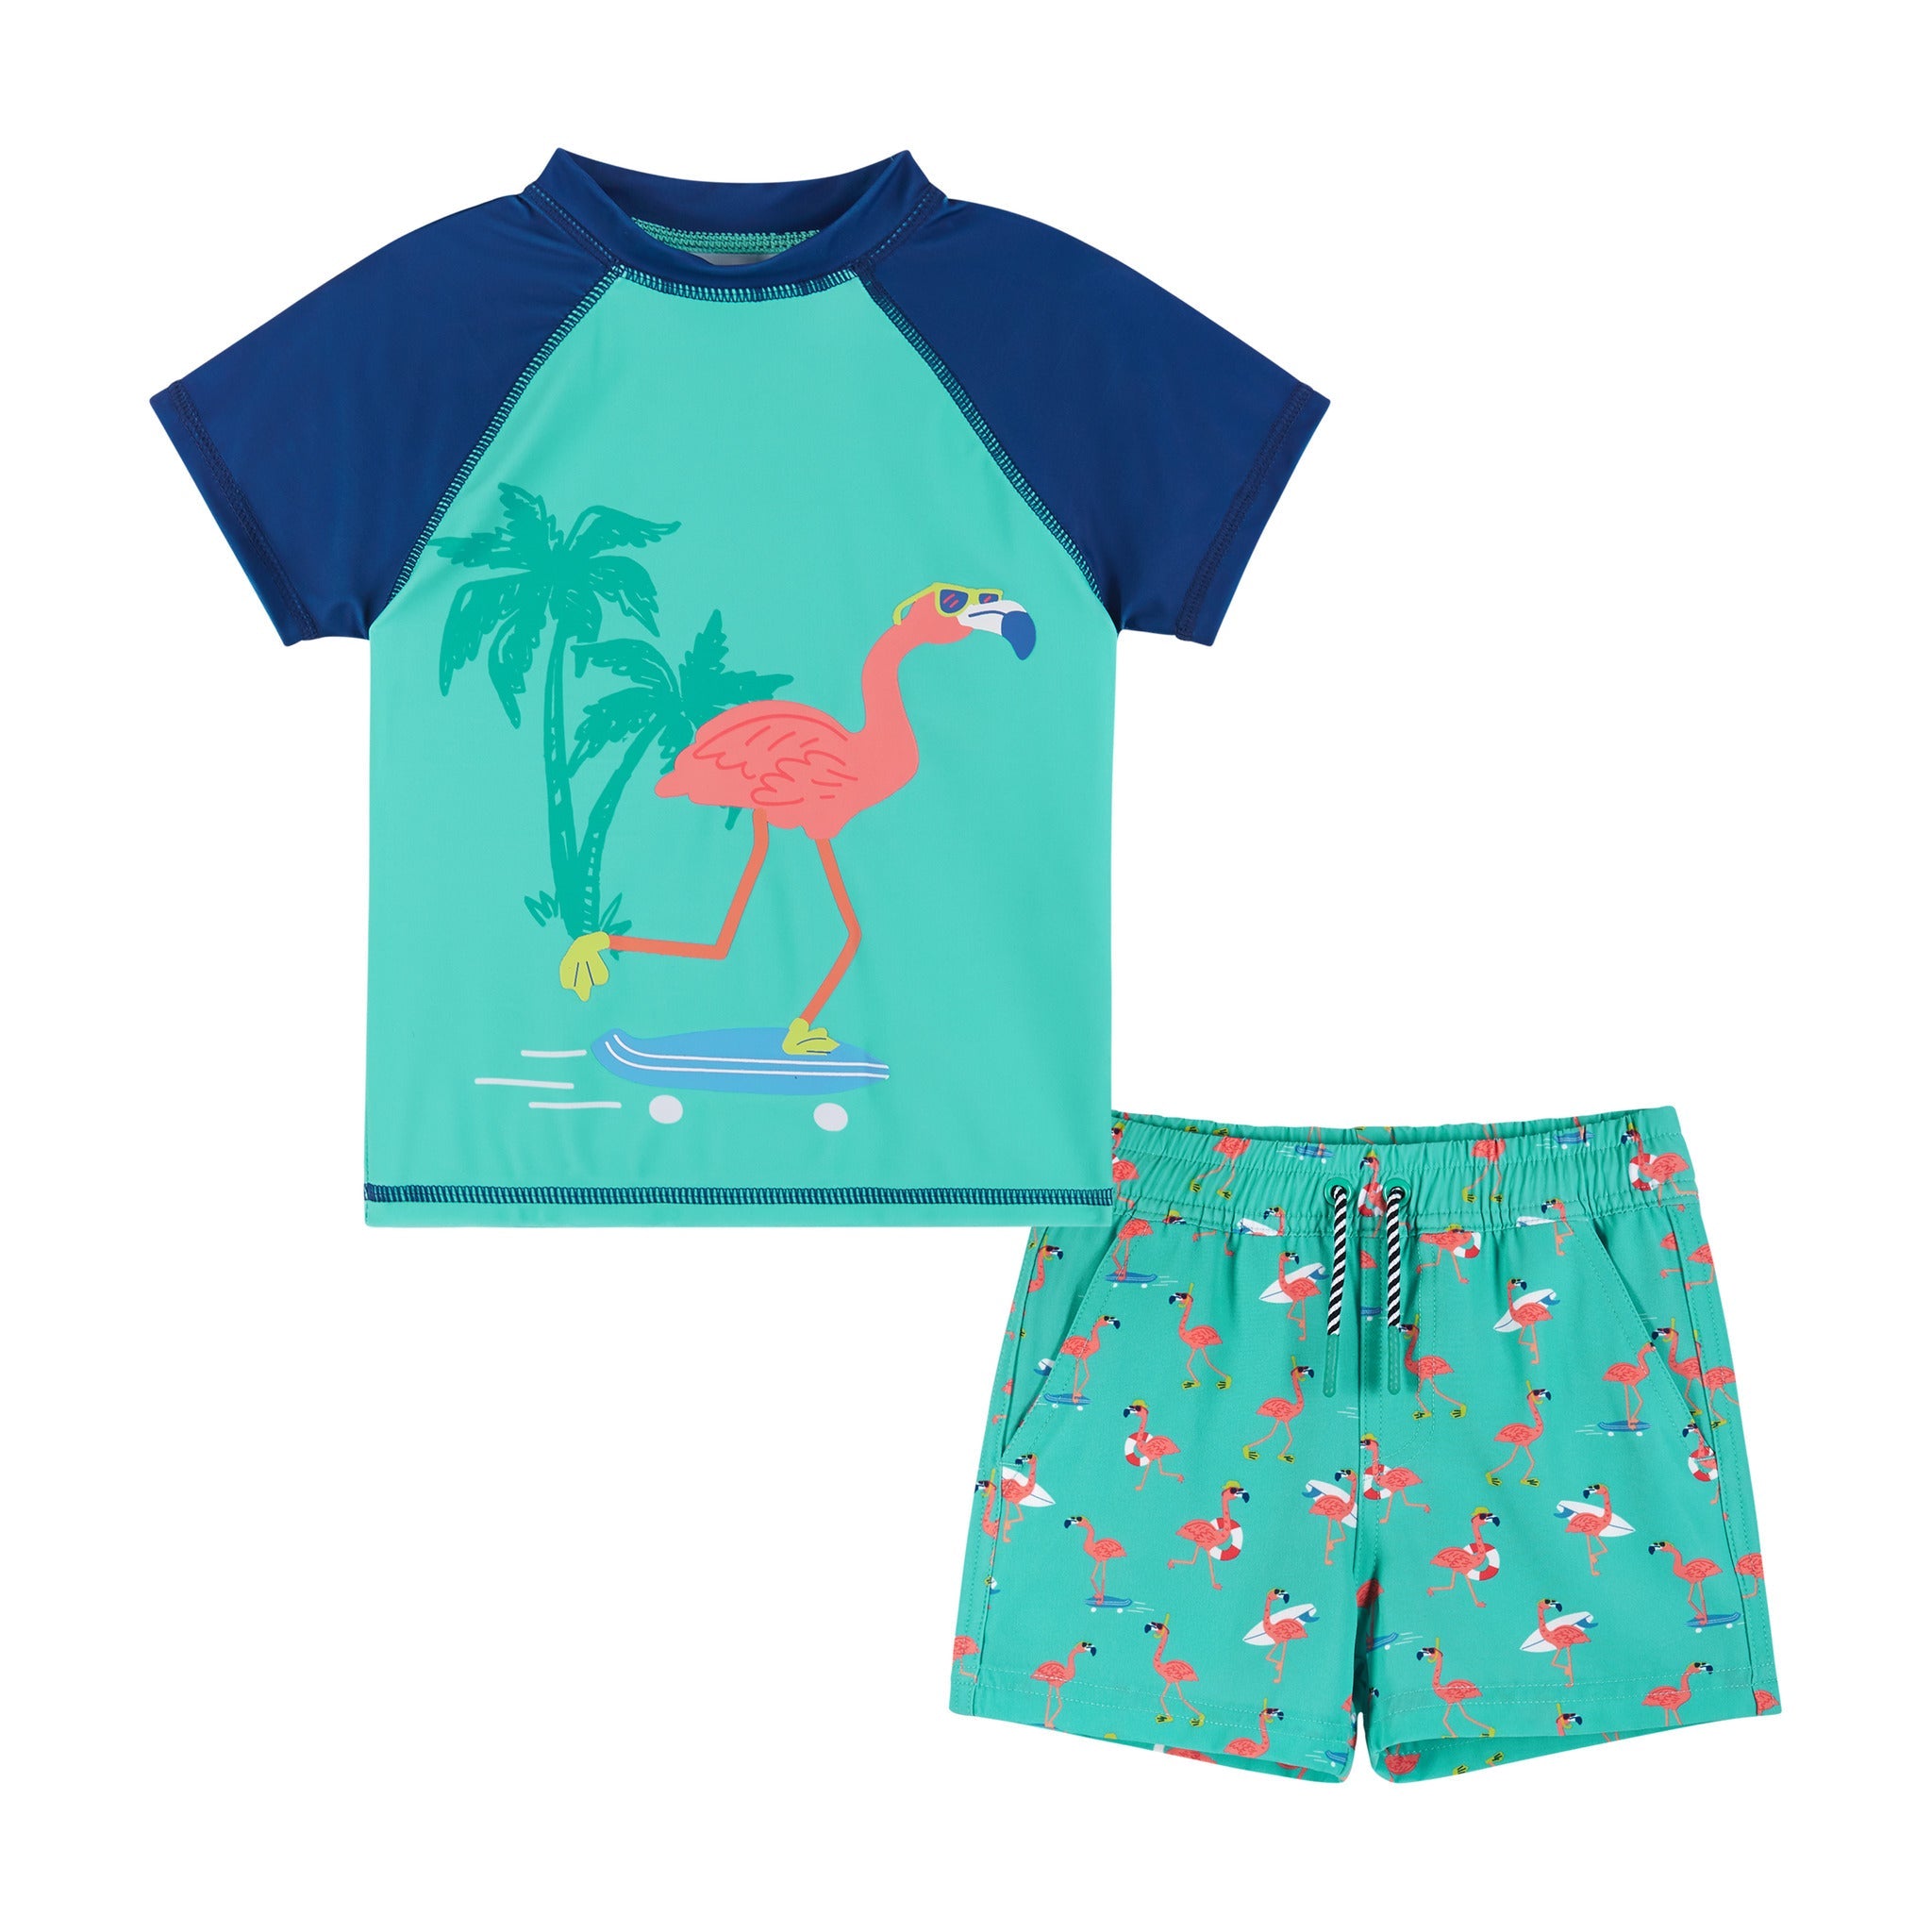 Infant Rashguard And Boardshort Set | Skate & Surf Flamingo Graphic